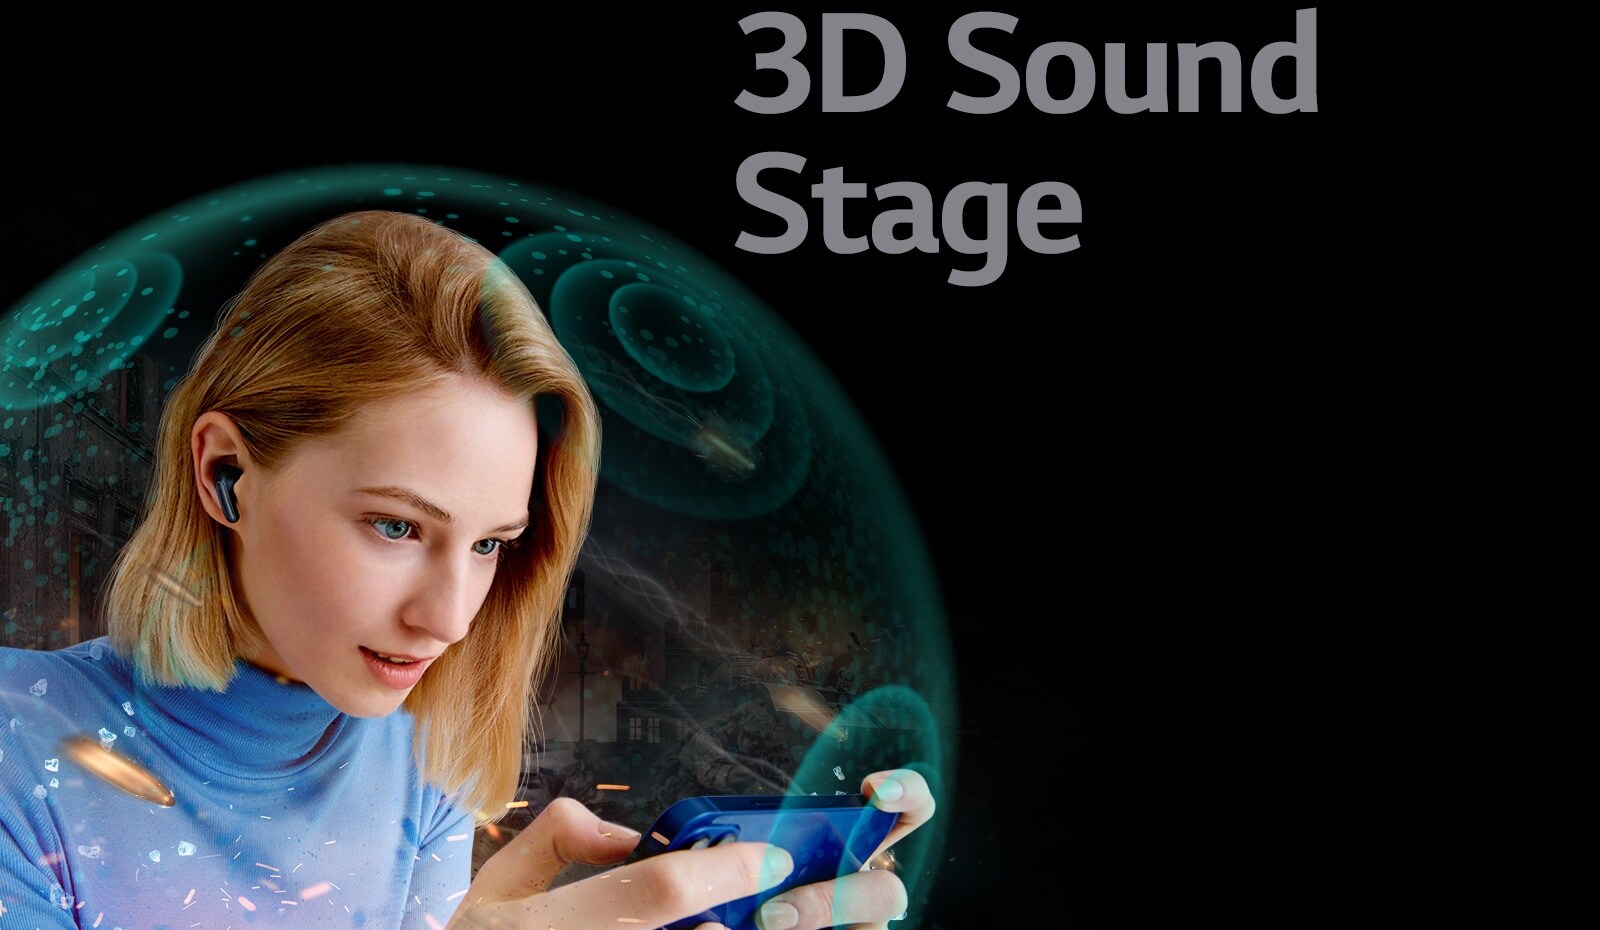 Telefonist filmi vaatavat TONE Free kõrvaklappe kandvat naist ümbritseb läbipaistev barjäär ning pildi kohal on lause „3D Sound Stage“.